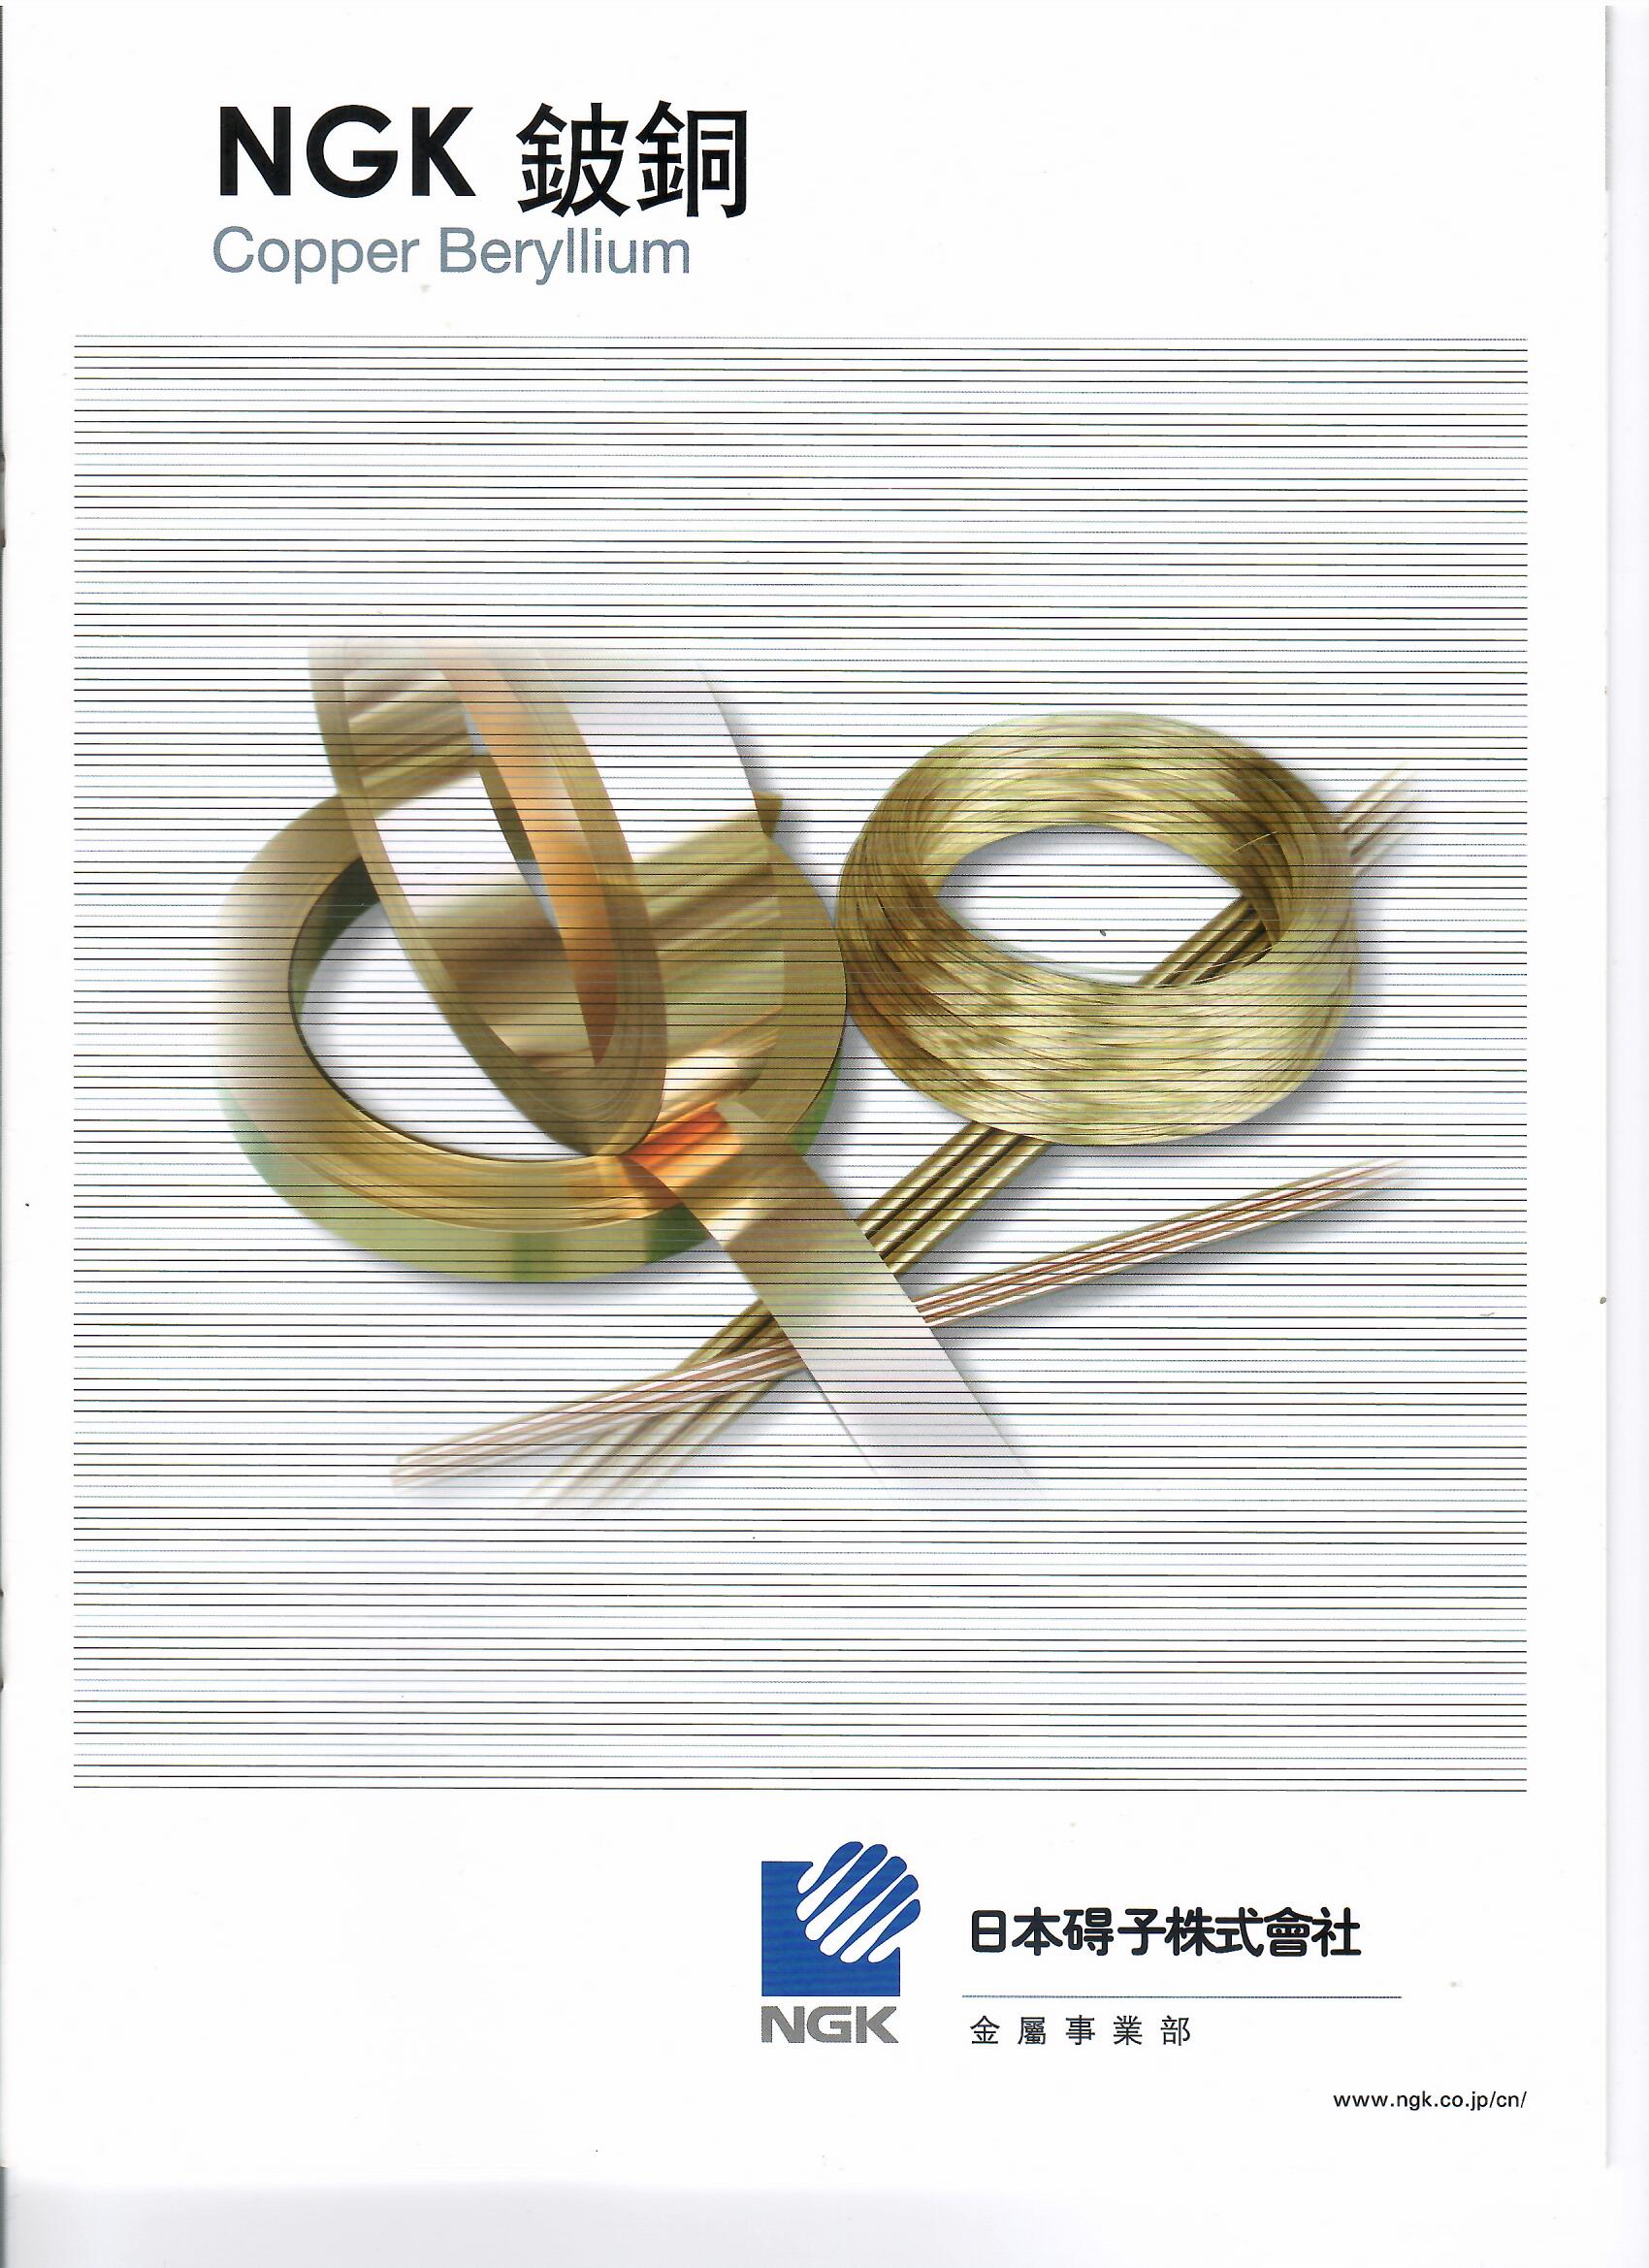 NGK 鈹銅 Beryllium copper 產品型錄下載